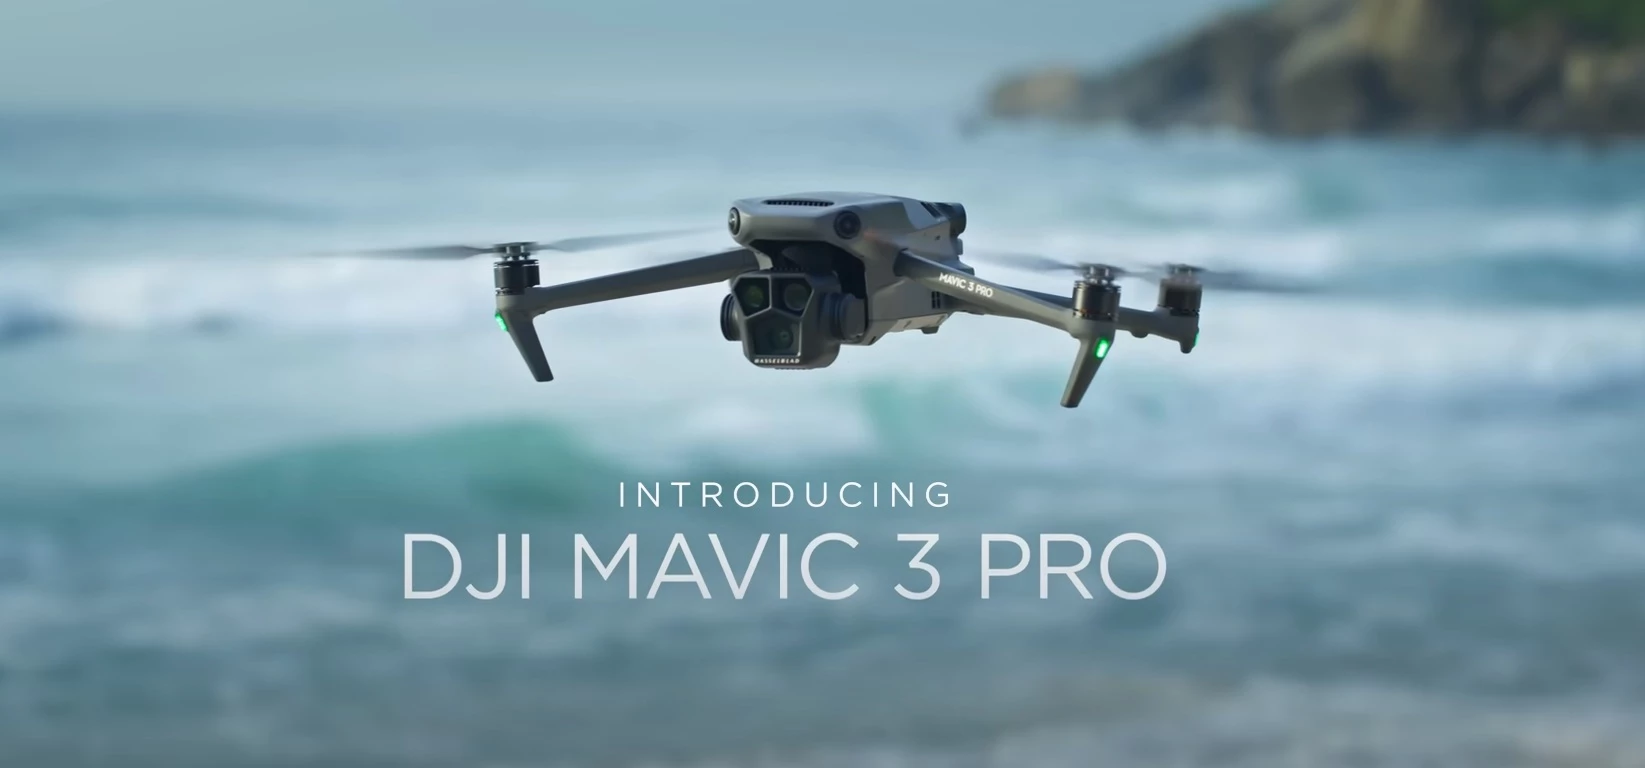 Зануртеся у світ високої якості: Квадрокоптер DJI Mavic 3 Pro